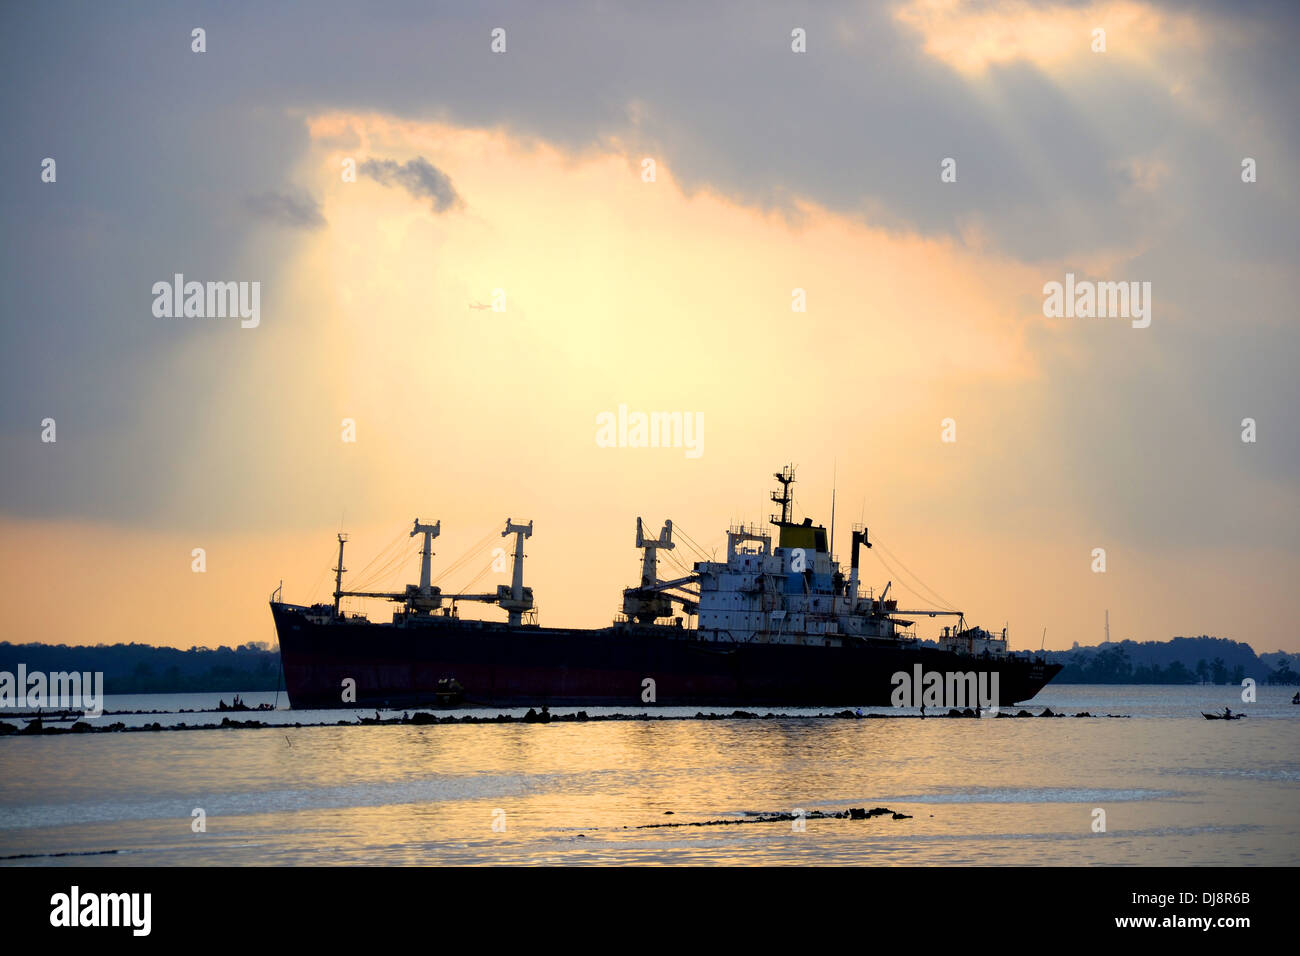 Ship at sunset dusk Stock Photo